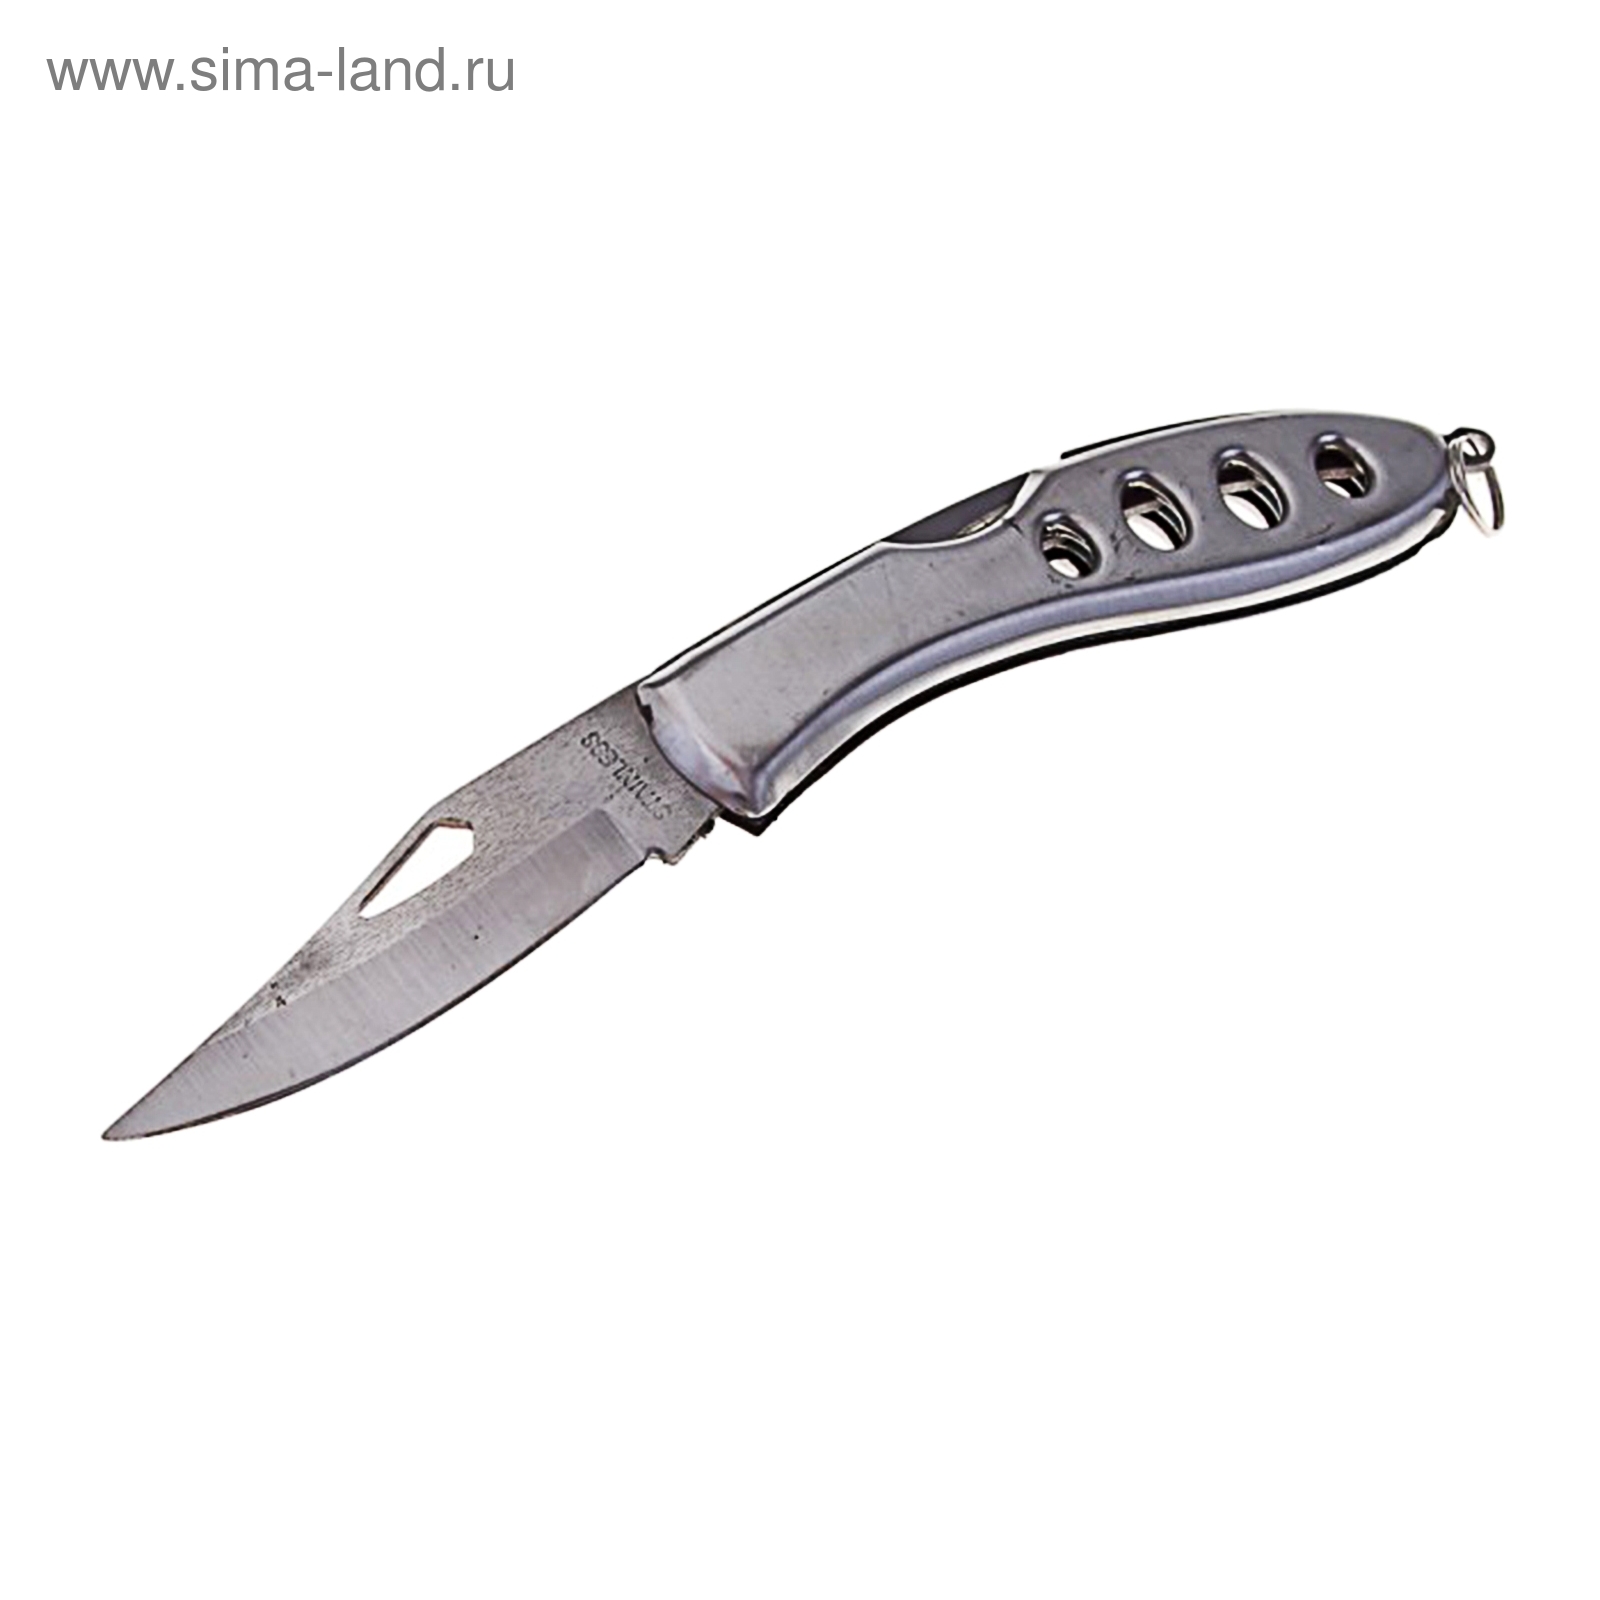 Сувенирный нож, складной, без фиксатора, рукоять металлик, вырезы овалы